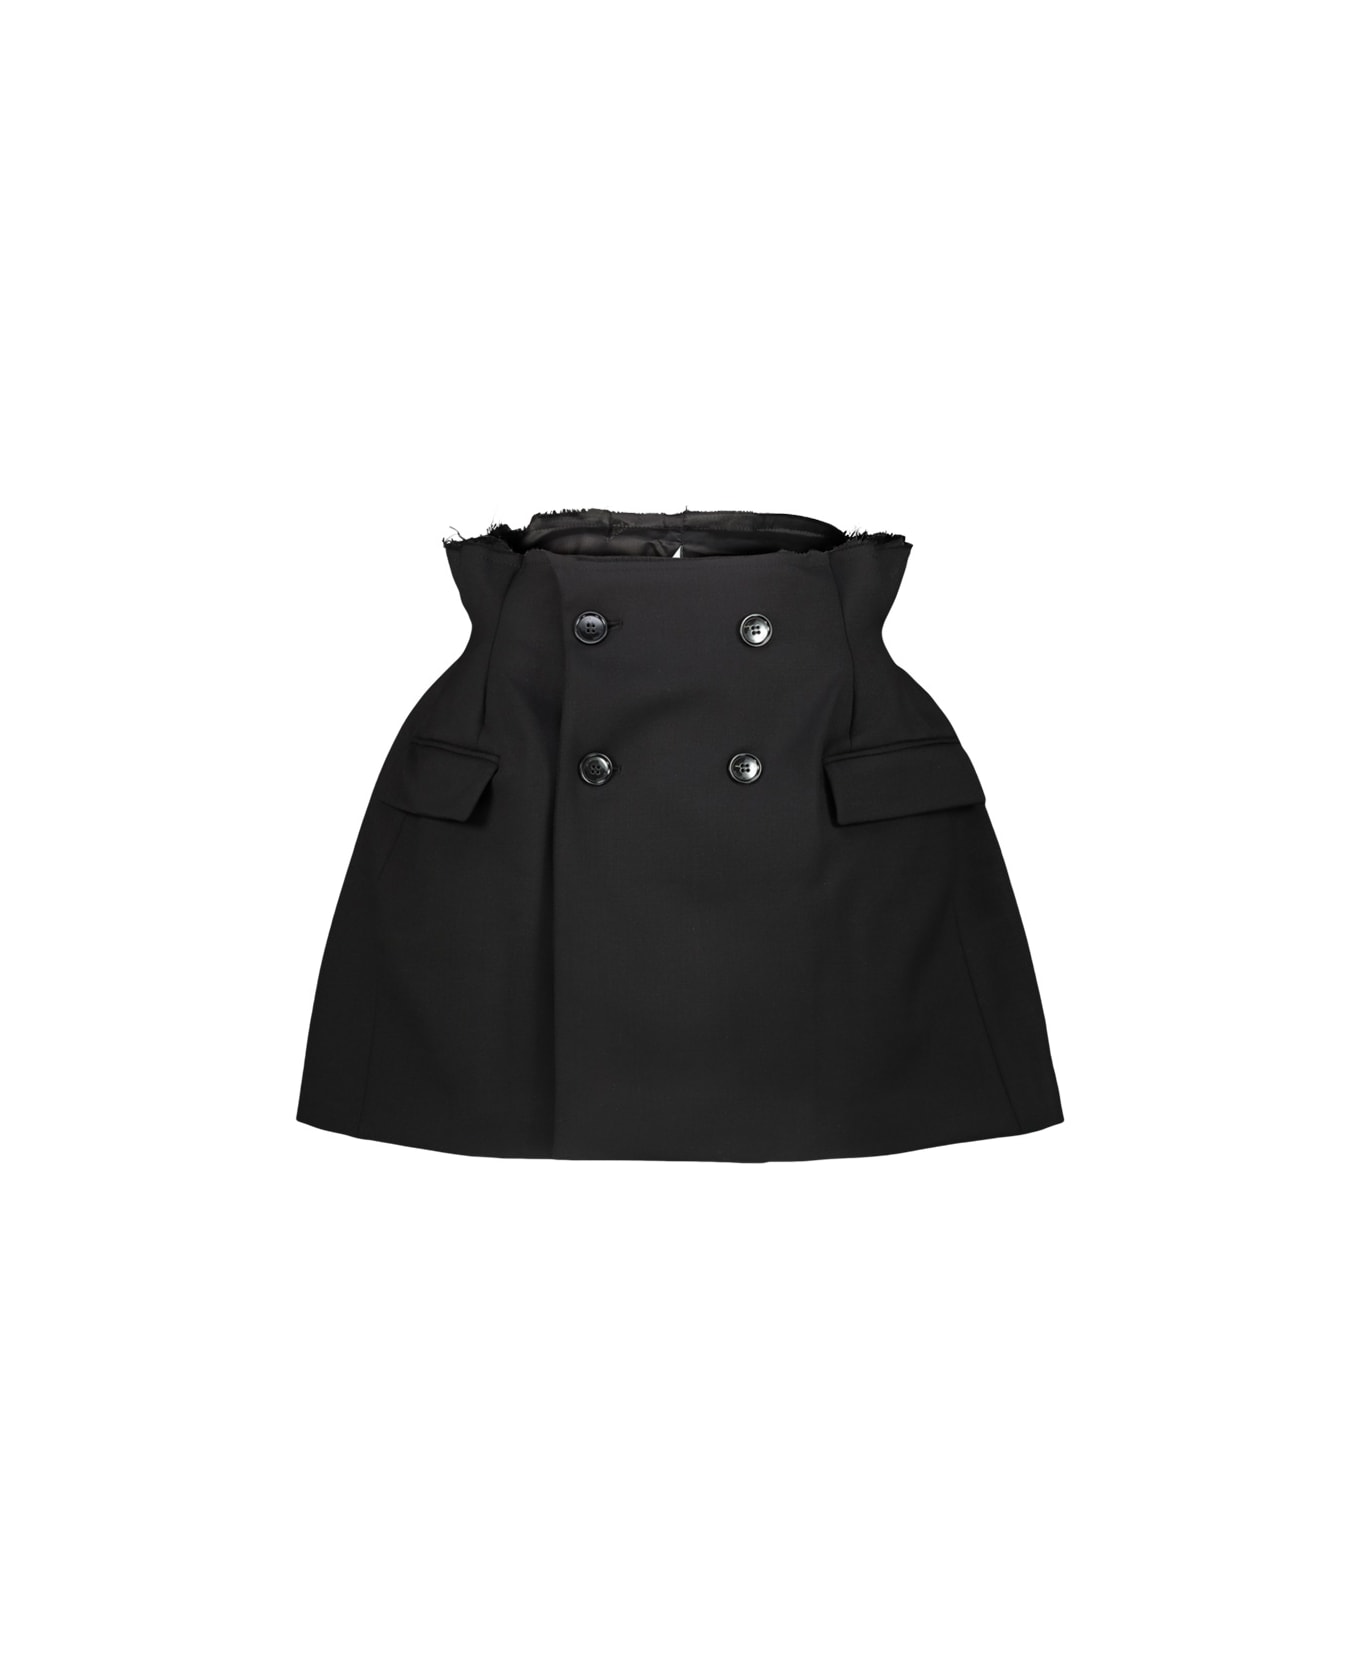 VETEMENTS Reconstructured Hourglass Skirt - Black